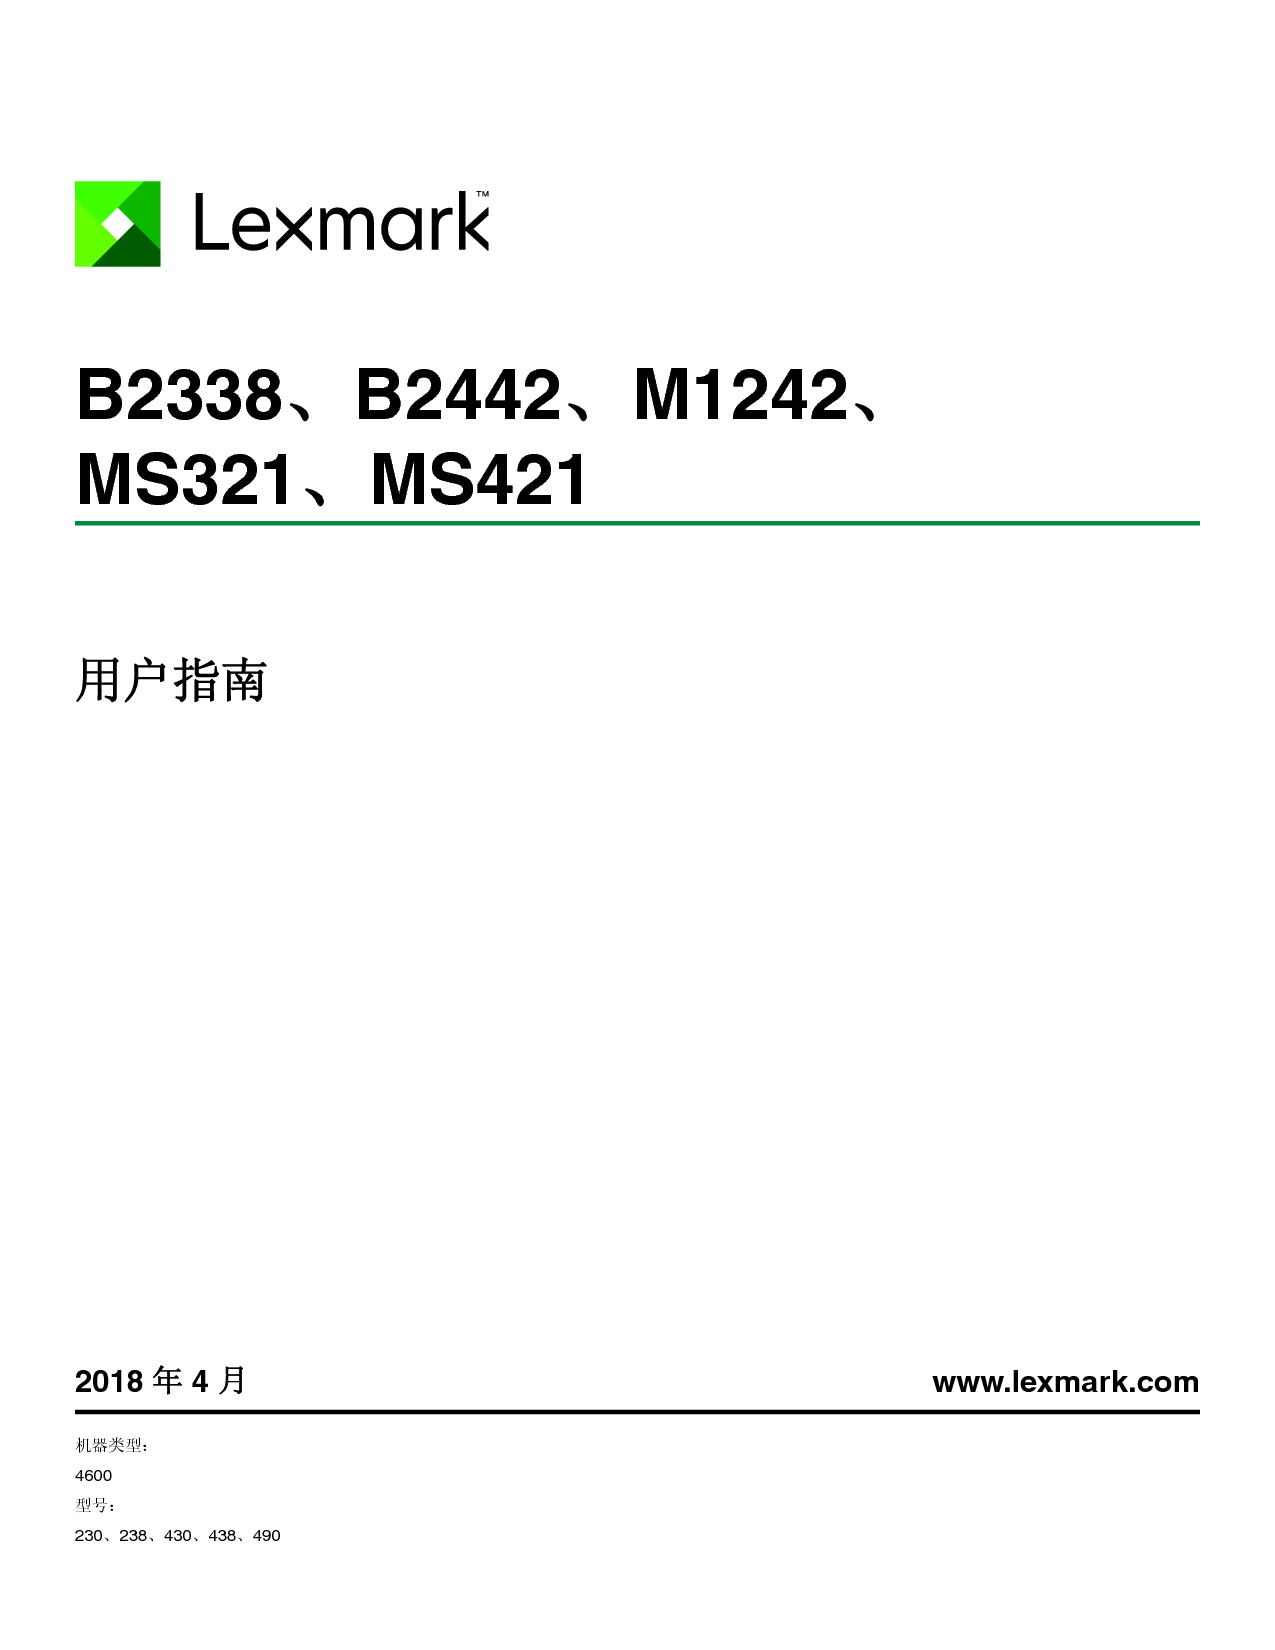 利盟 Lexmark B2338, B2442, M1242, MS321 用户指南 封面